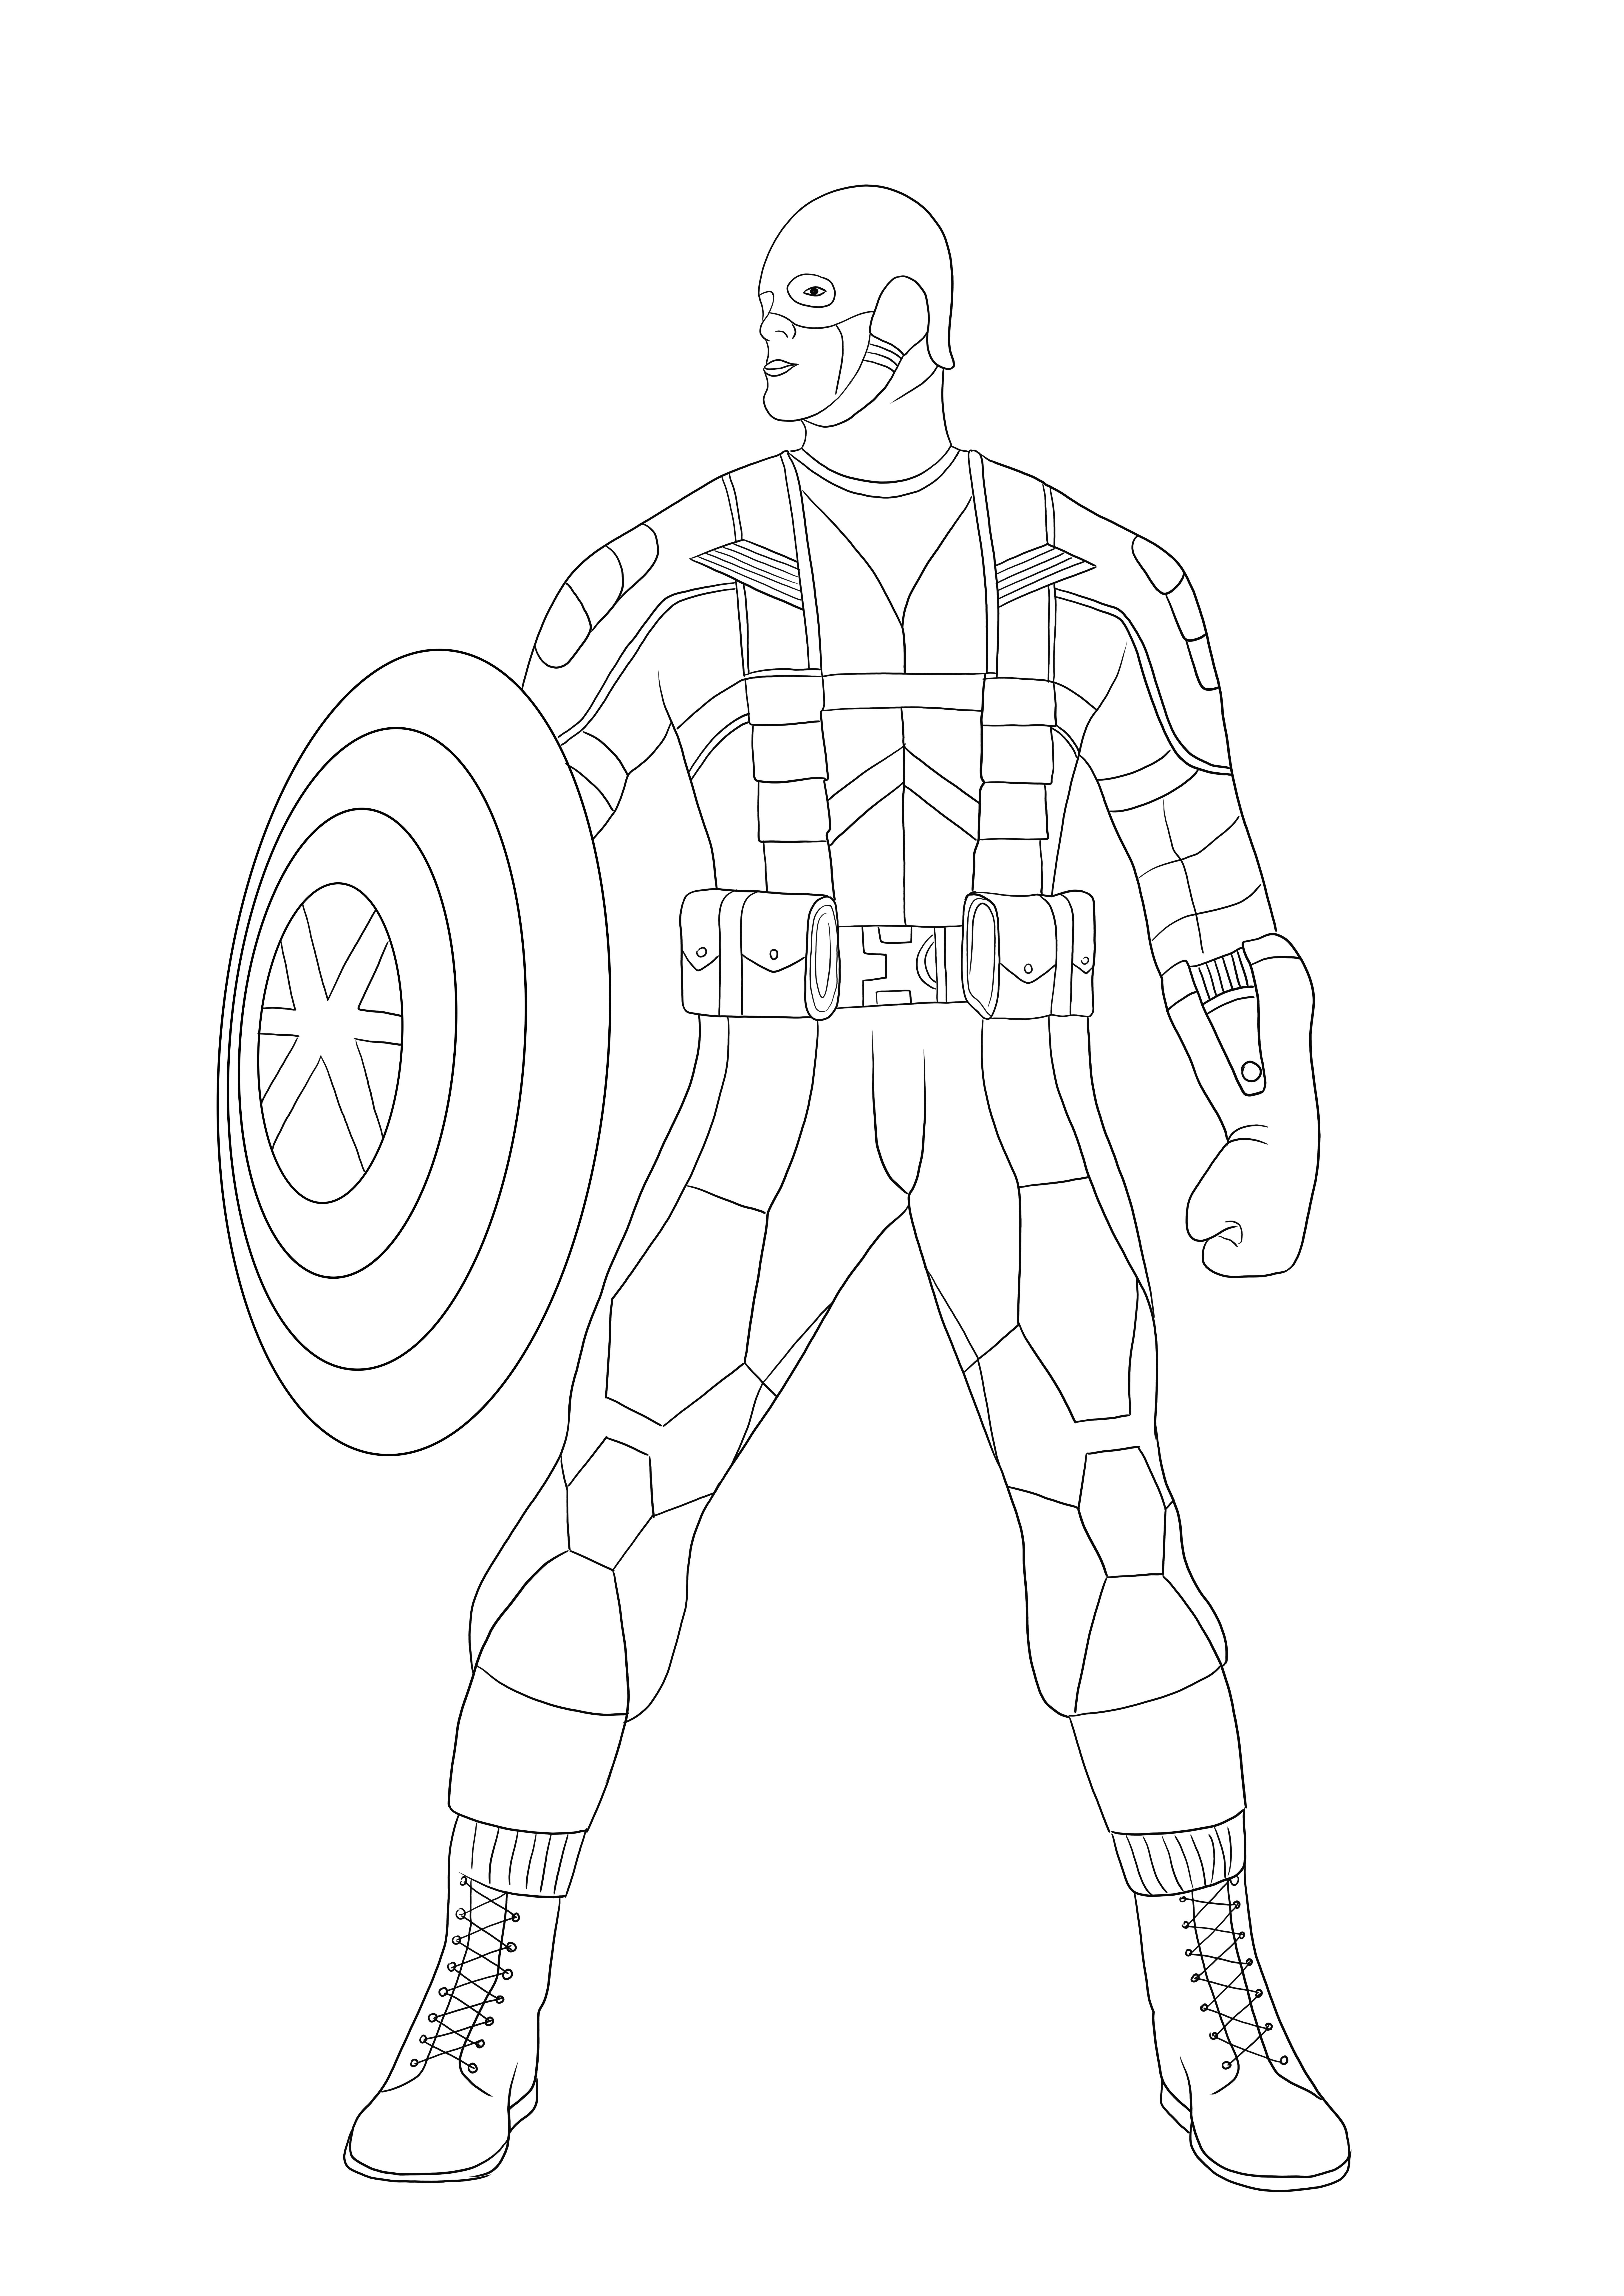 Captain America klaar om te vechten, gratis downloadbare afbeelding die gemakkelijk in te kleuren is